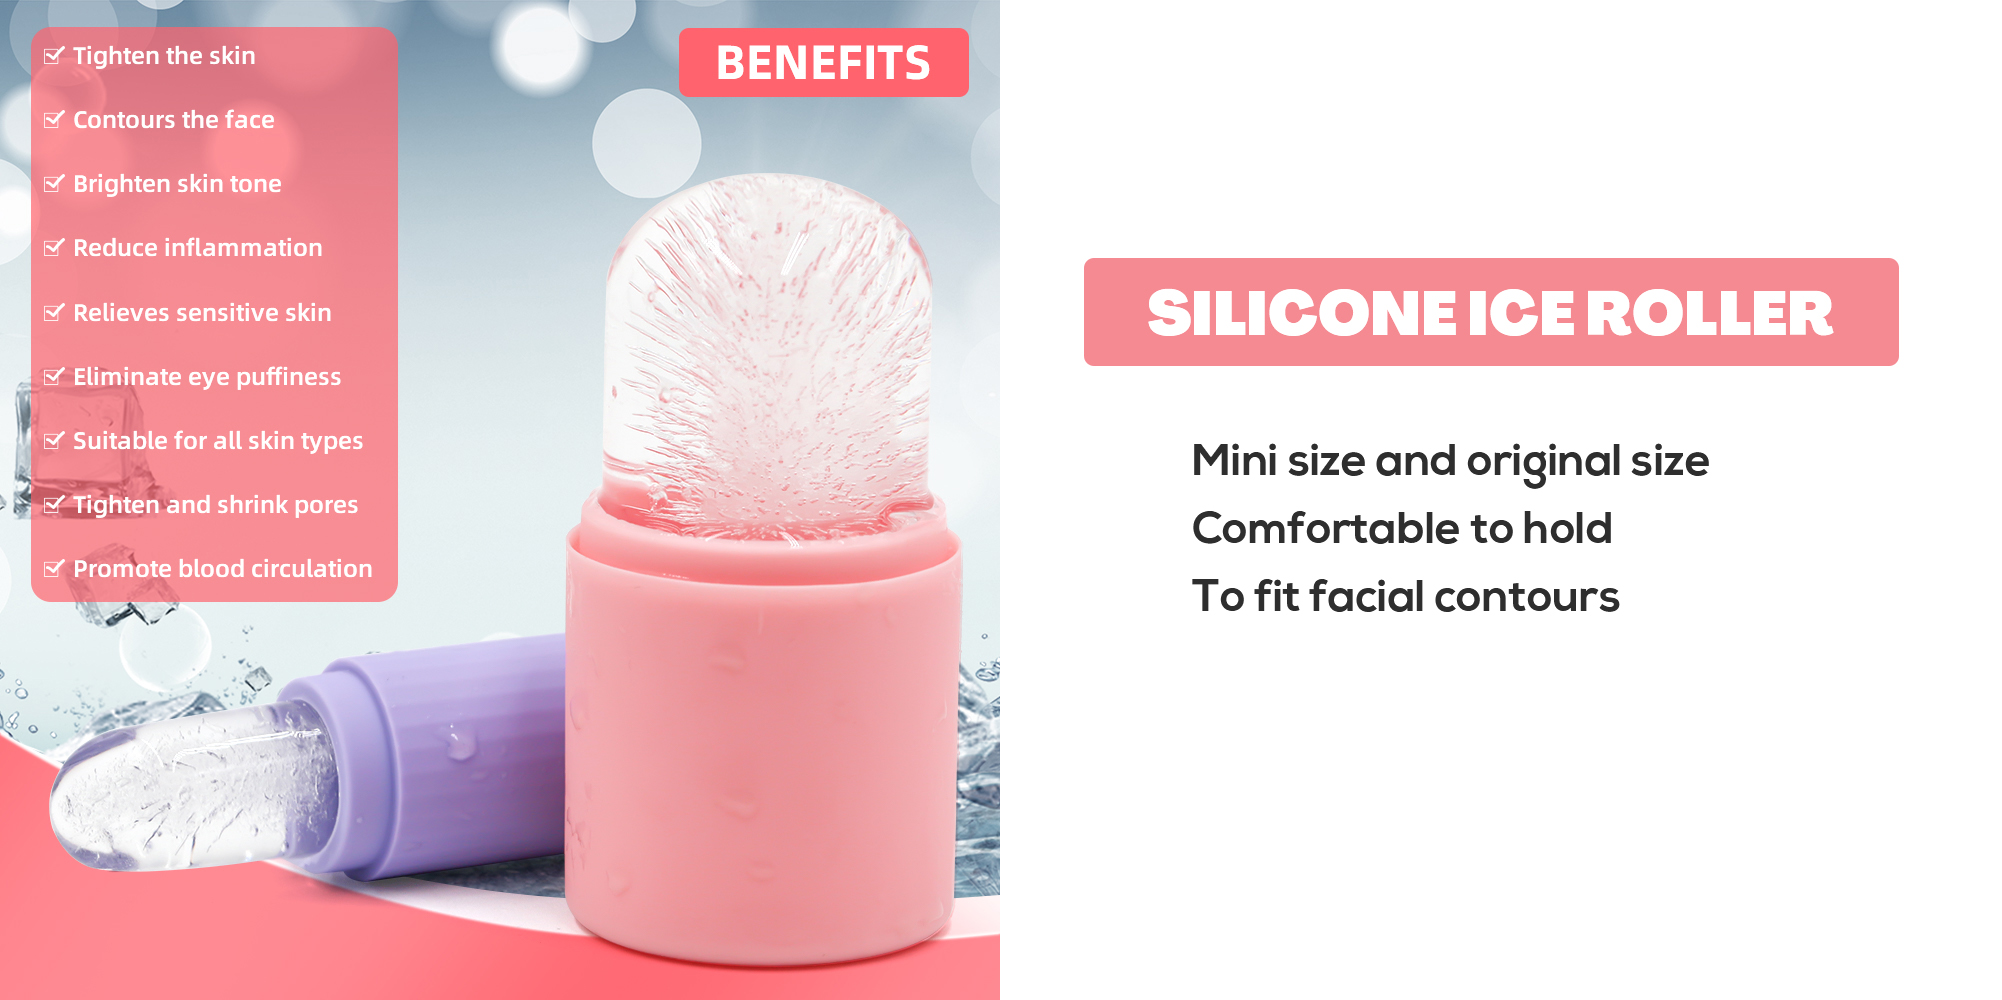 Mini taille et taille originale Mise à niveau du glaçon en silicone pour les soins de la peau beauté du visage